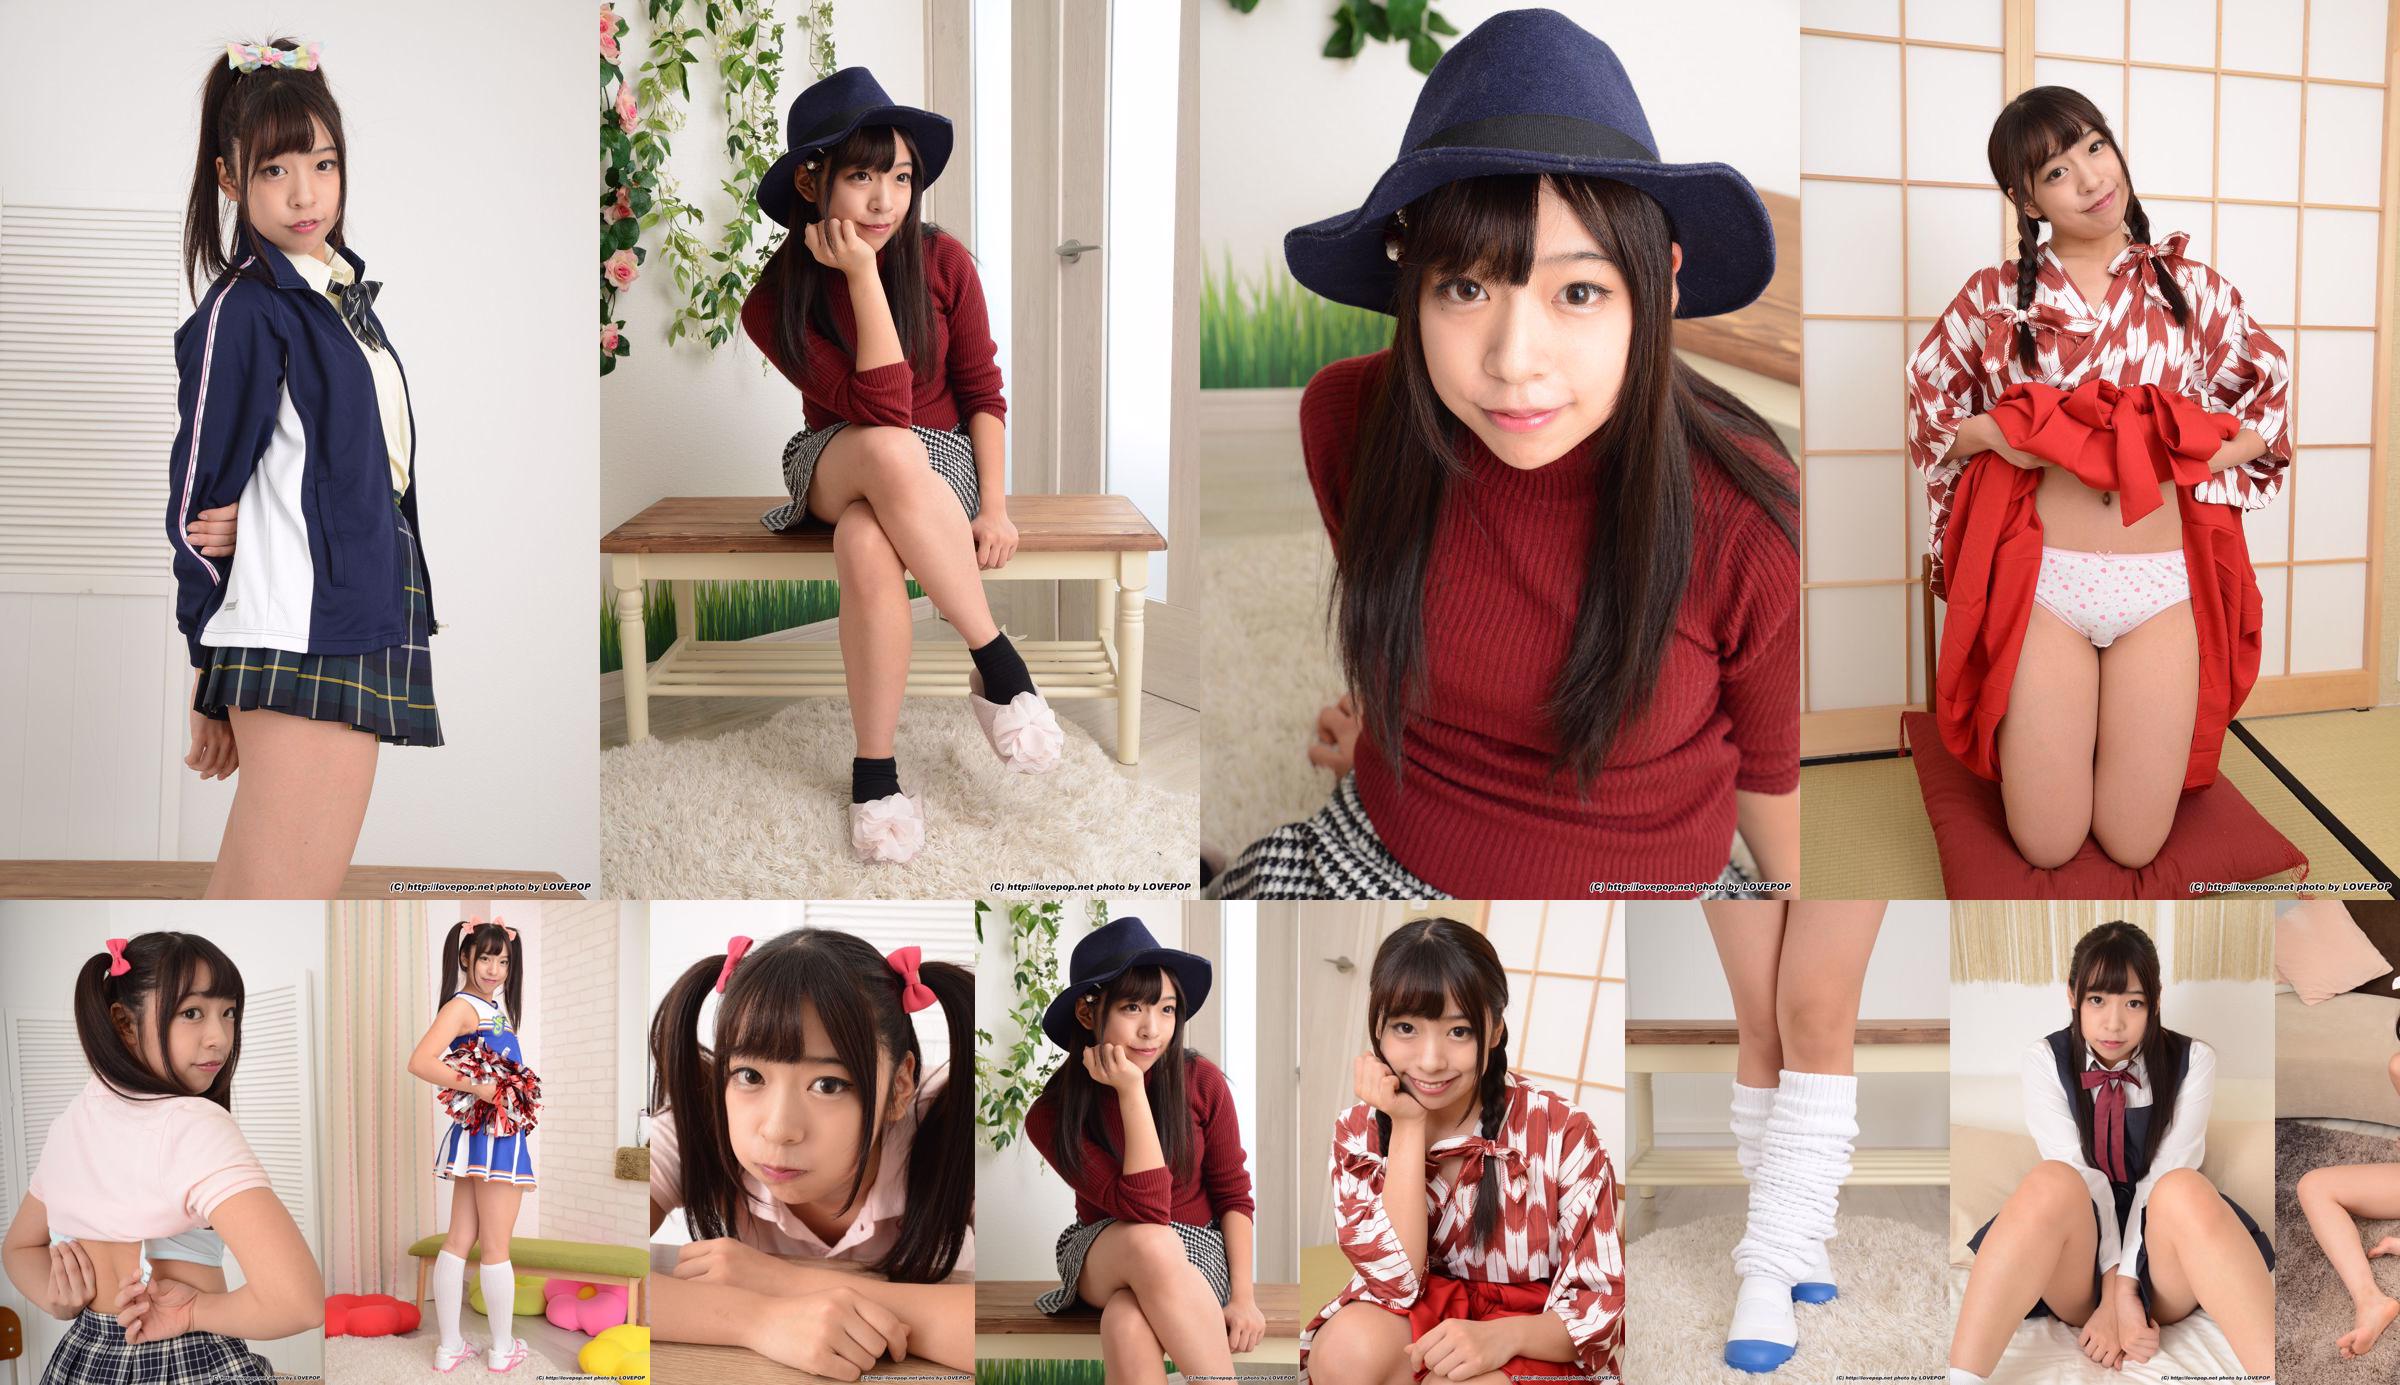 [LOVEPOP] Karen Sakisaka Karen Sakisaka - JK Uniform Photoset 03 No.26ef5b Page 28